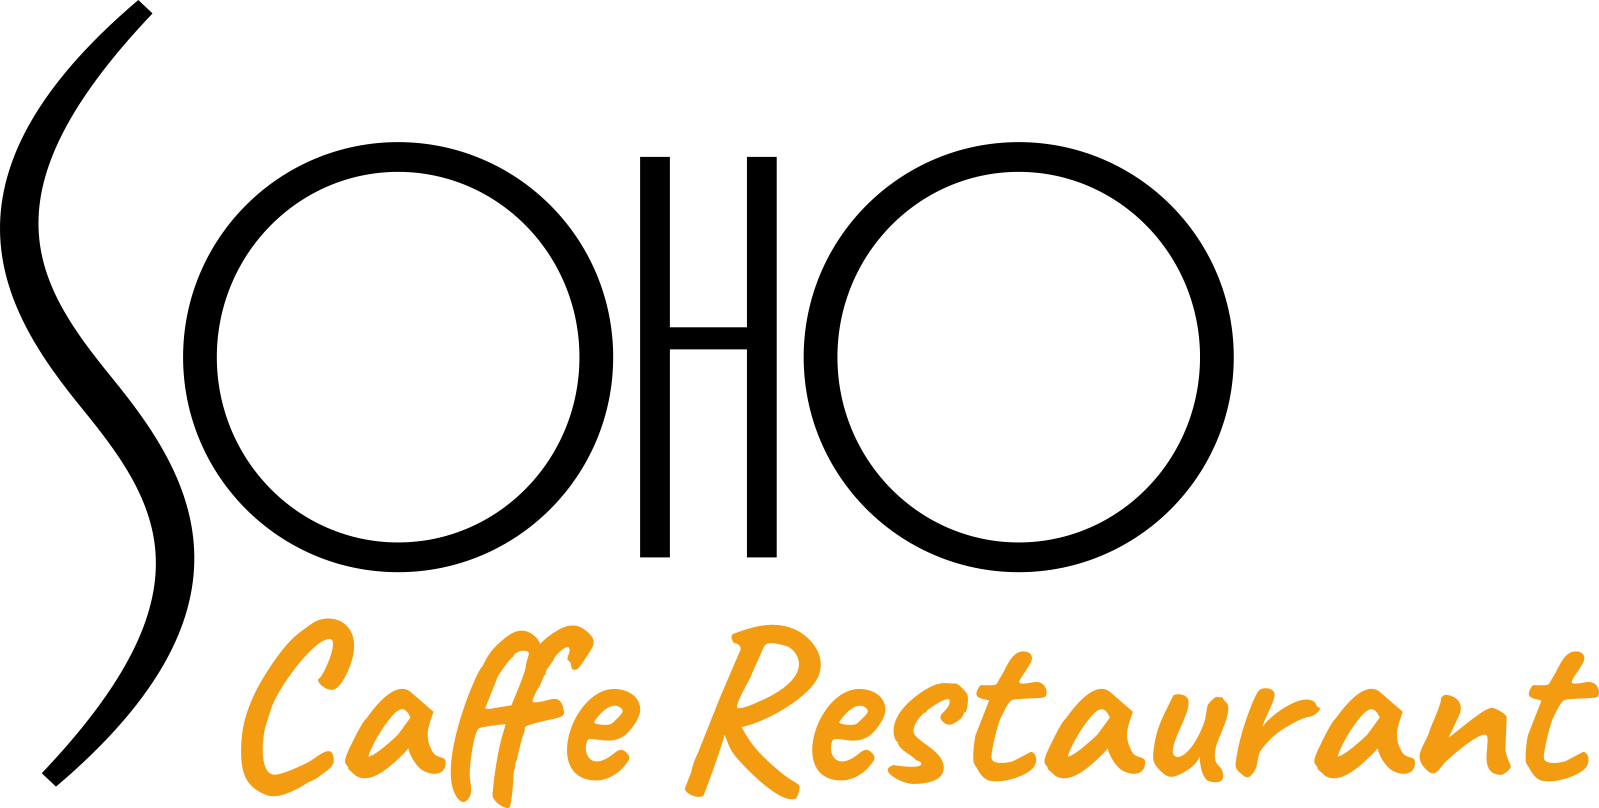 Soho Caffe Restaurant